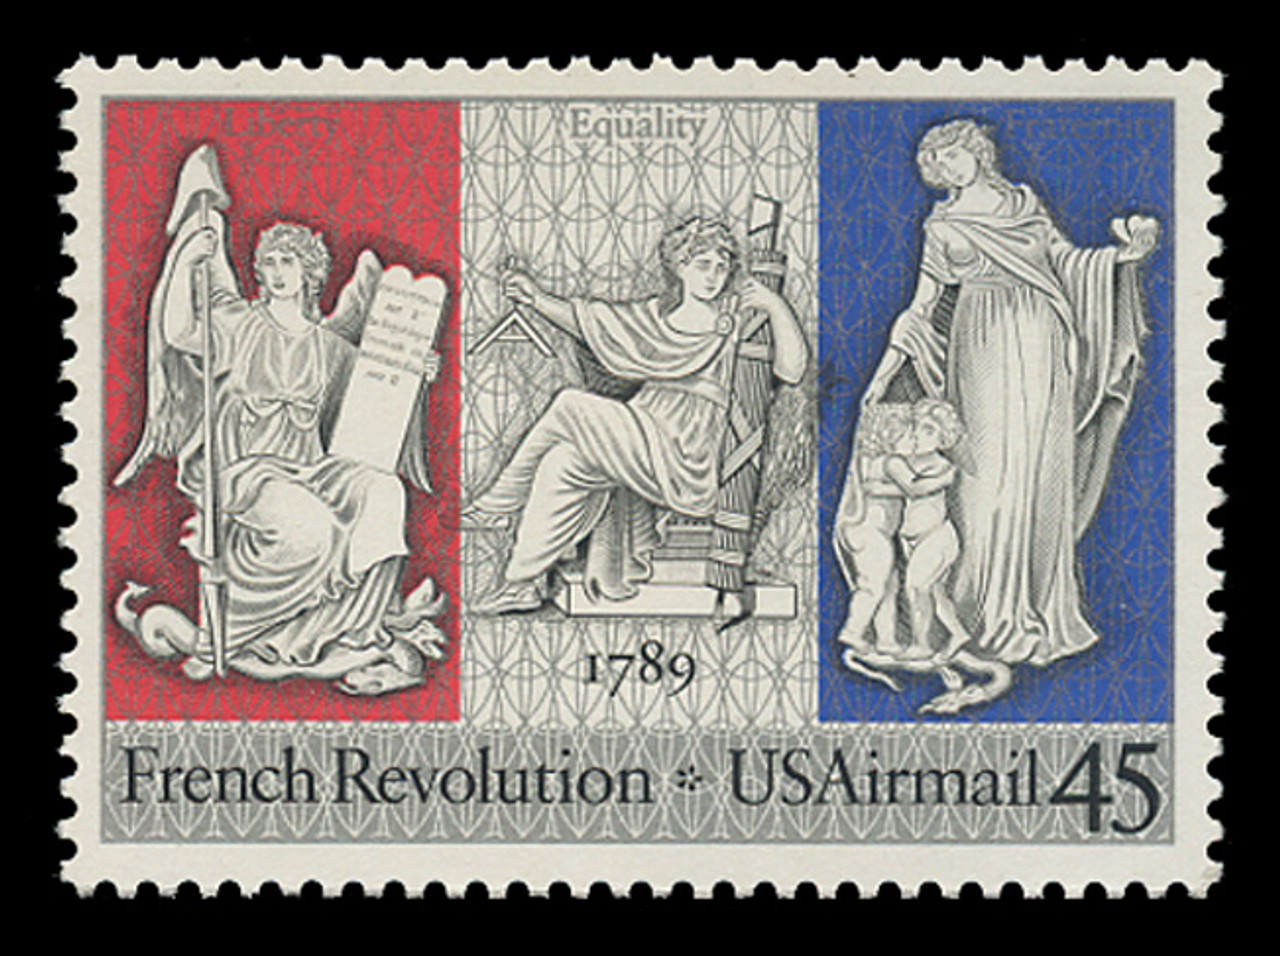 U.S. Scott # C 120, 1989 45c French Revolution